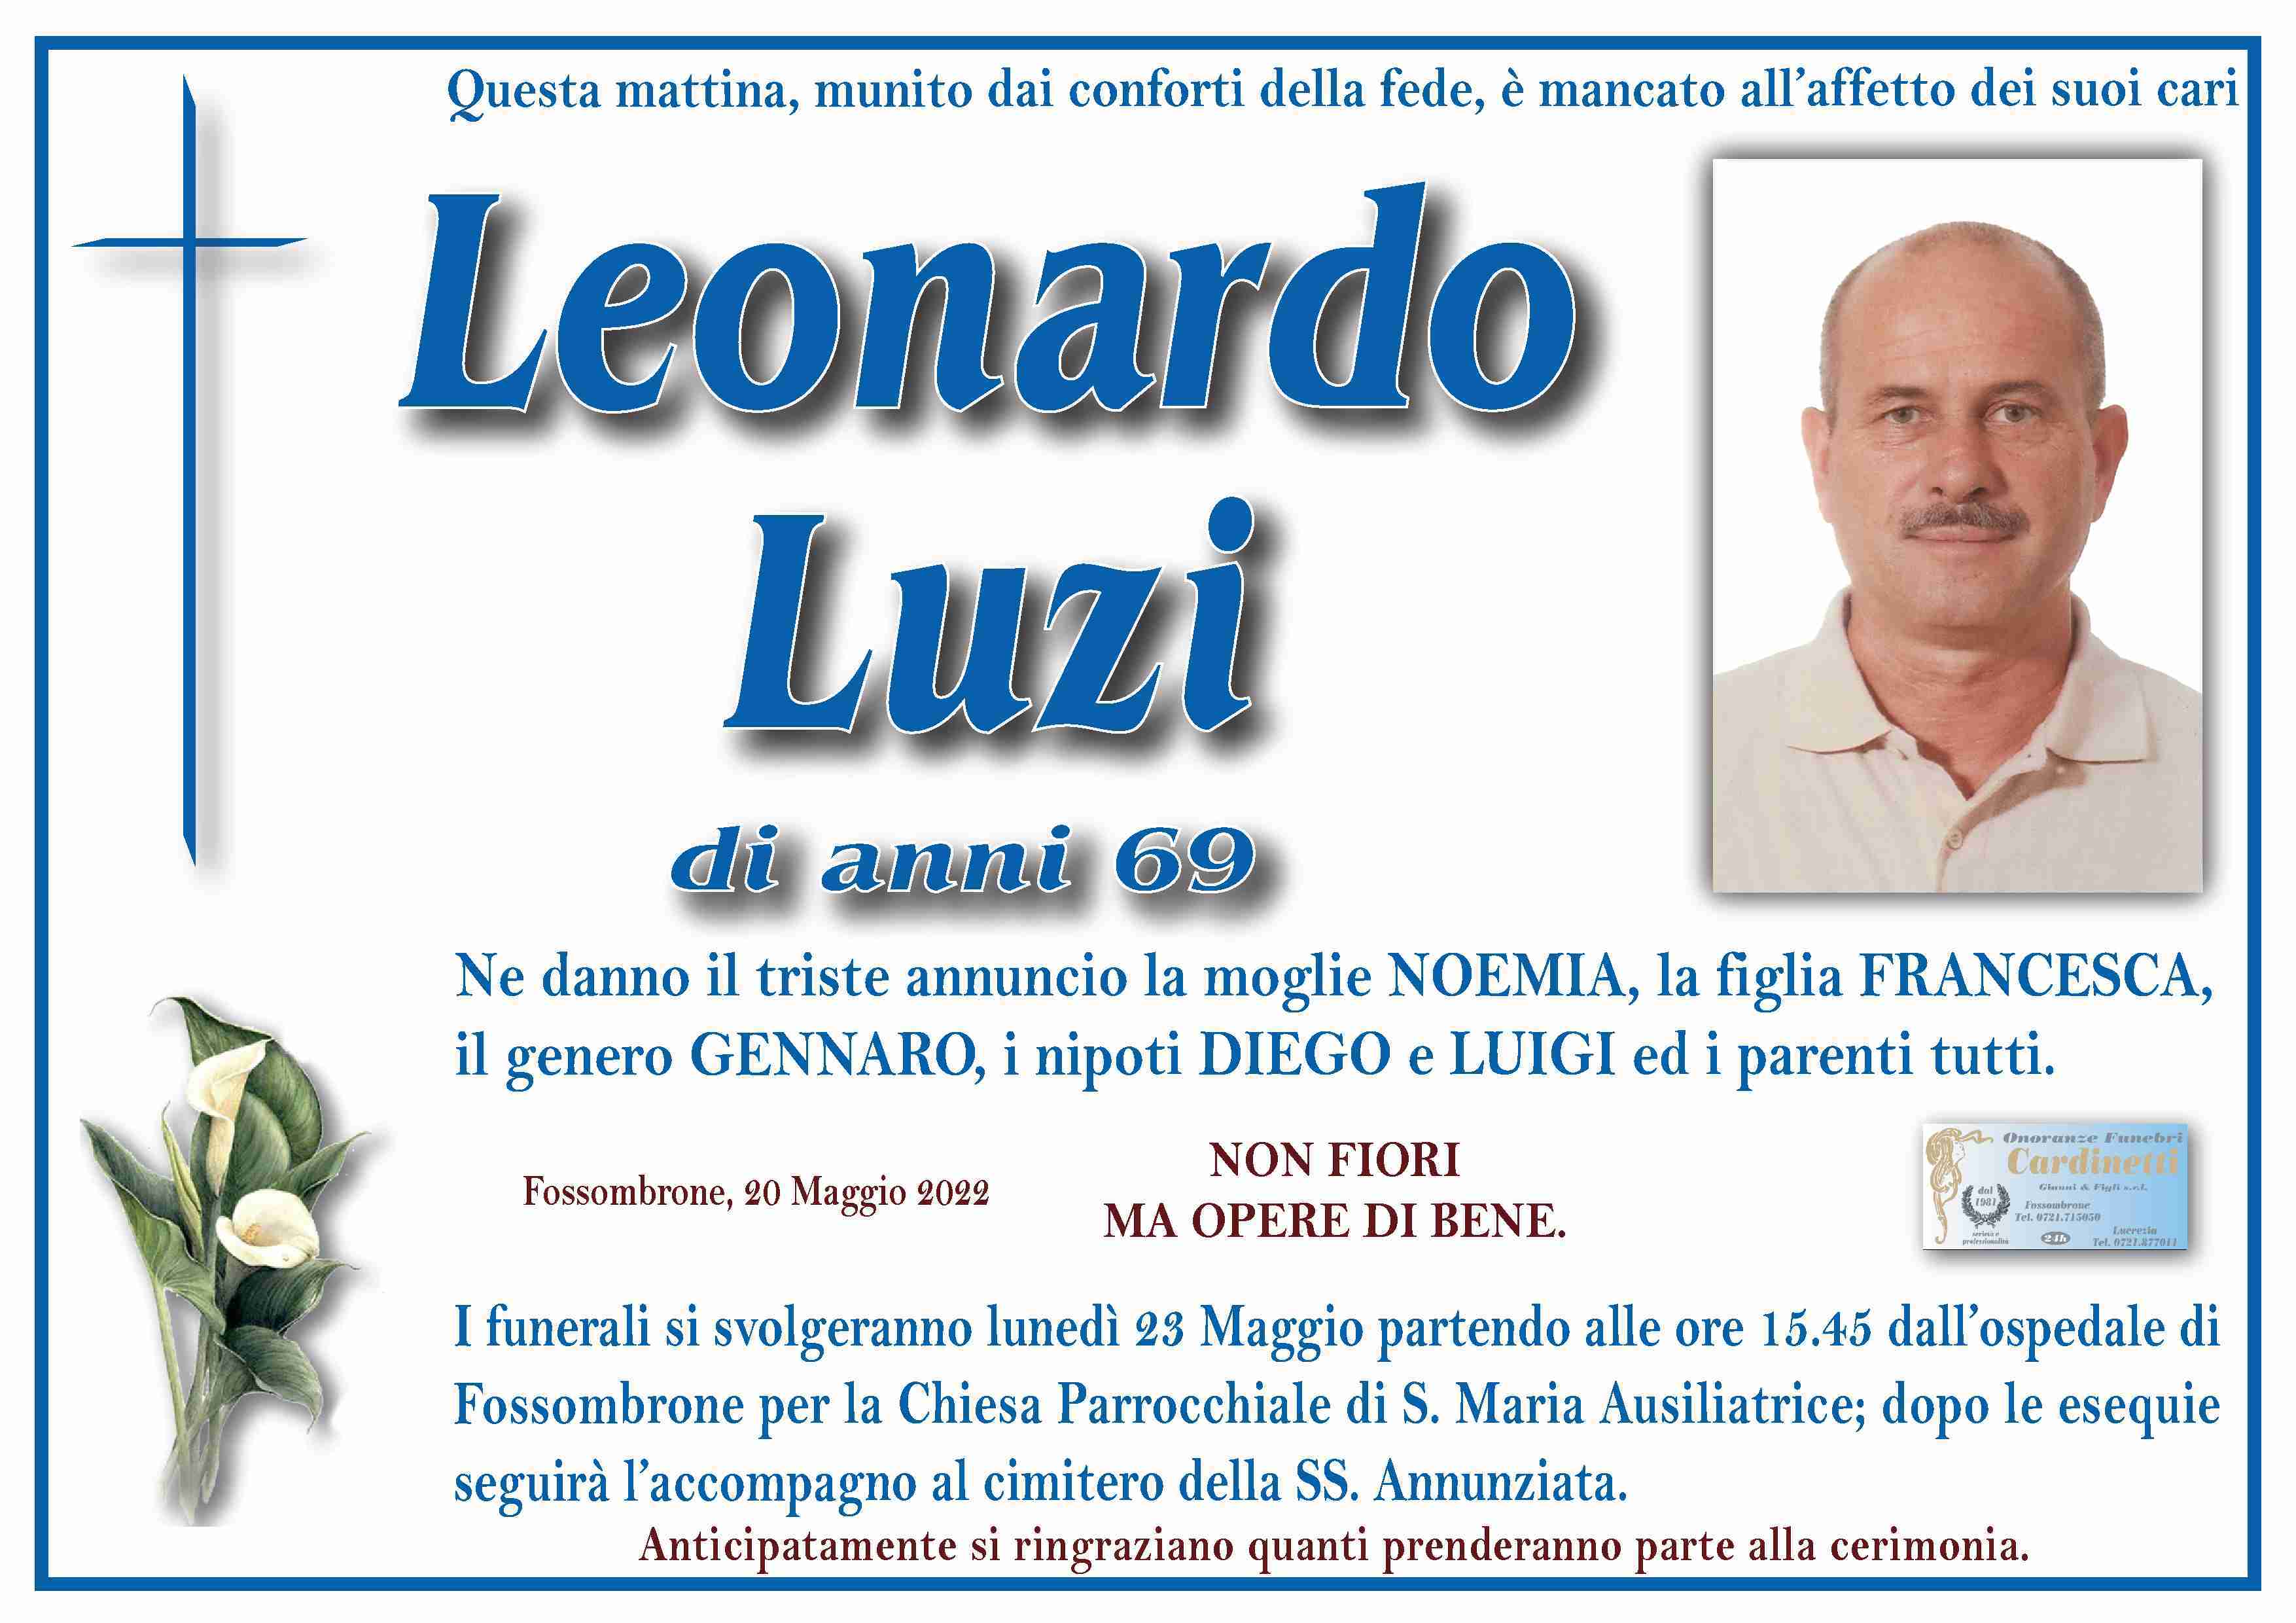 Leonardo Luzi